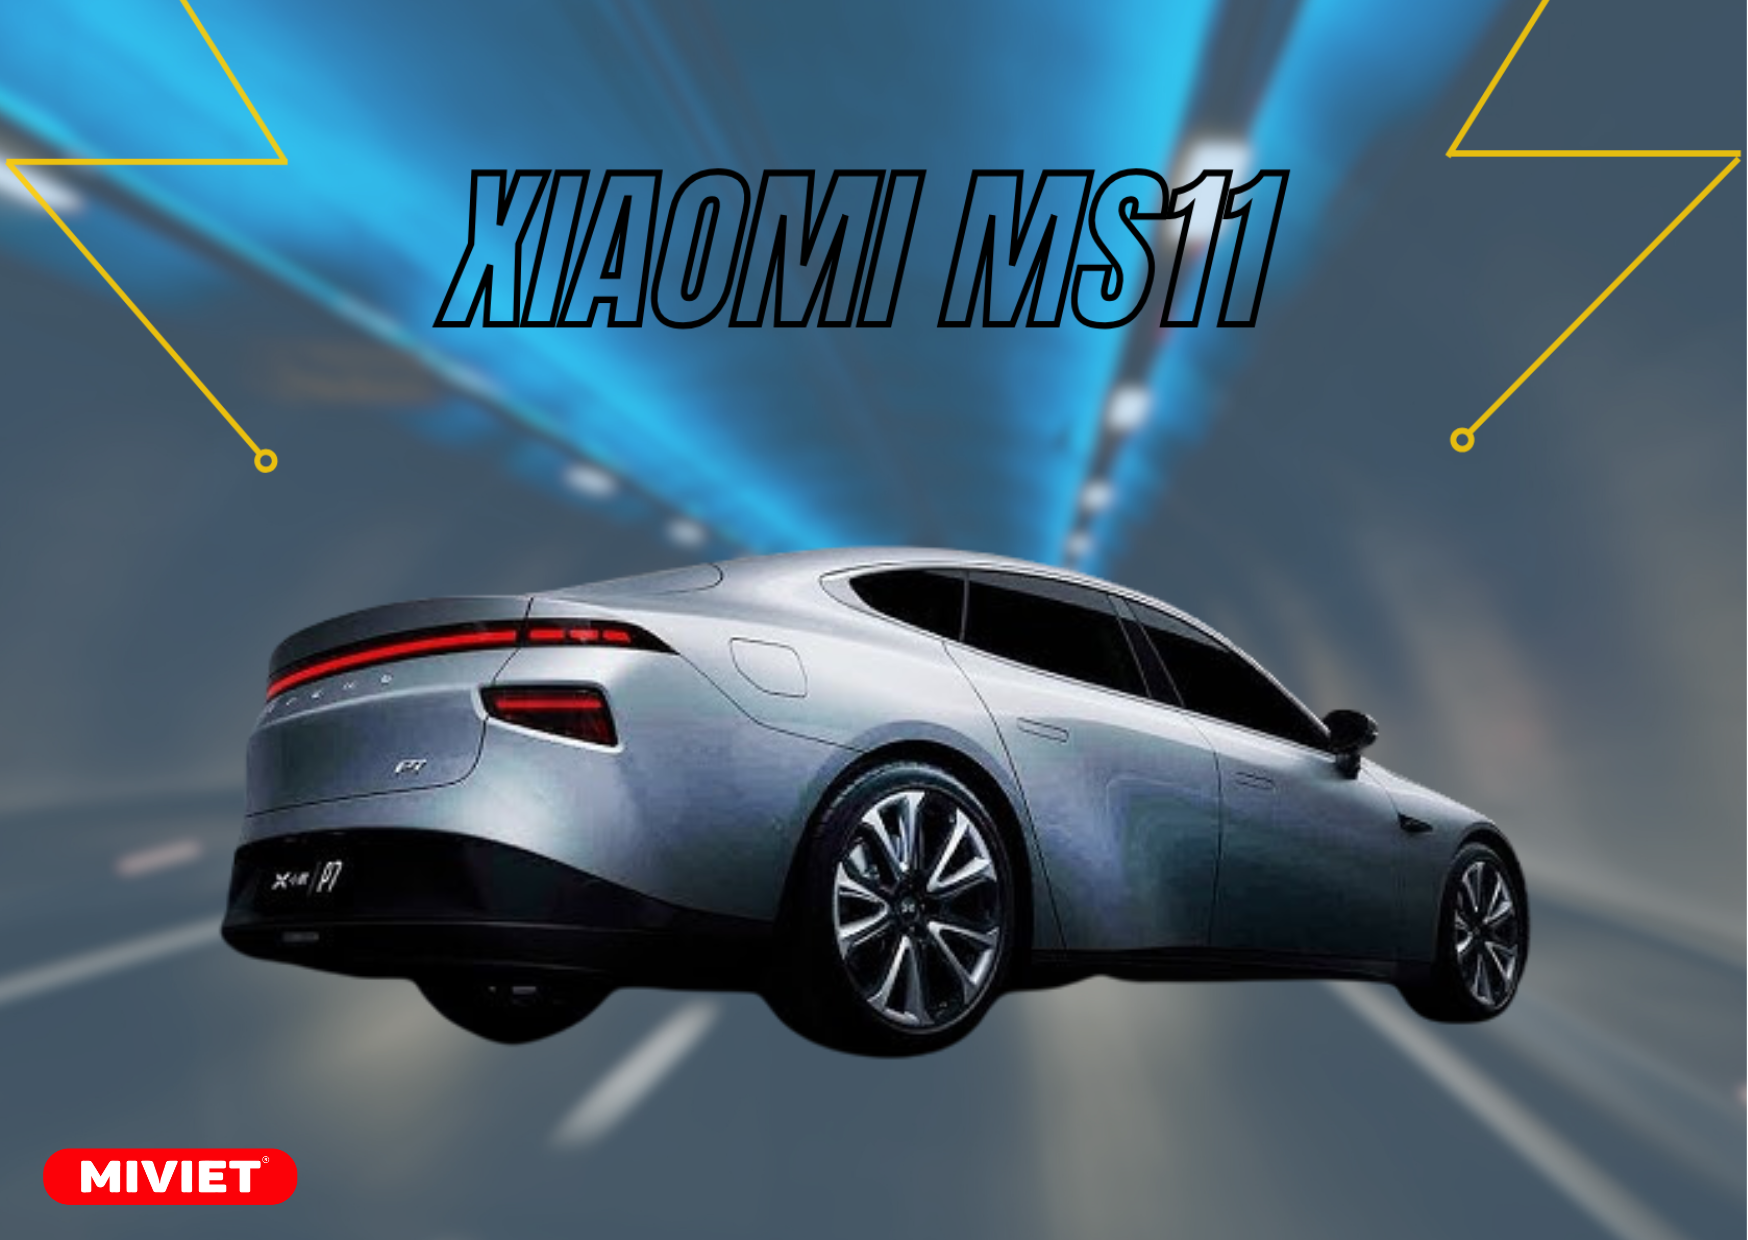 Dòng sedan điện của Xiaomi có thể được đặt tên là "Modena" và dự kiến sẽ được ra mắt với ba phiên bản khác nhau